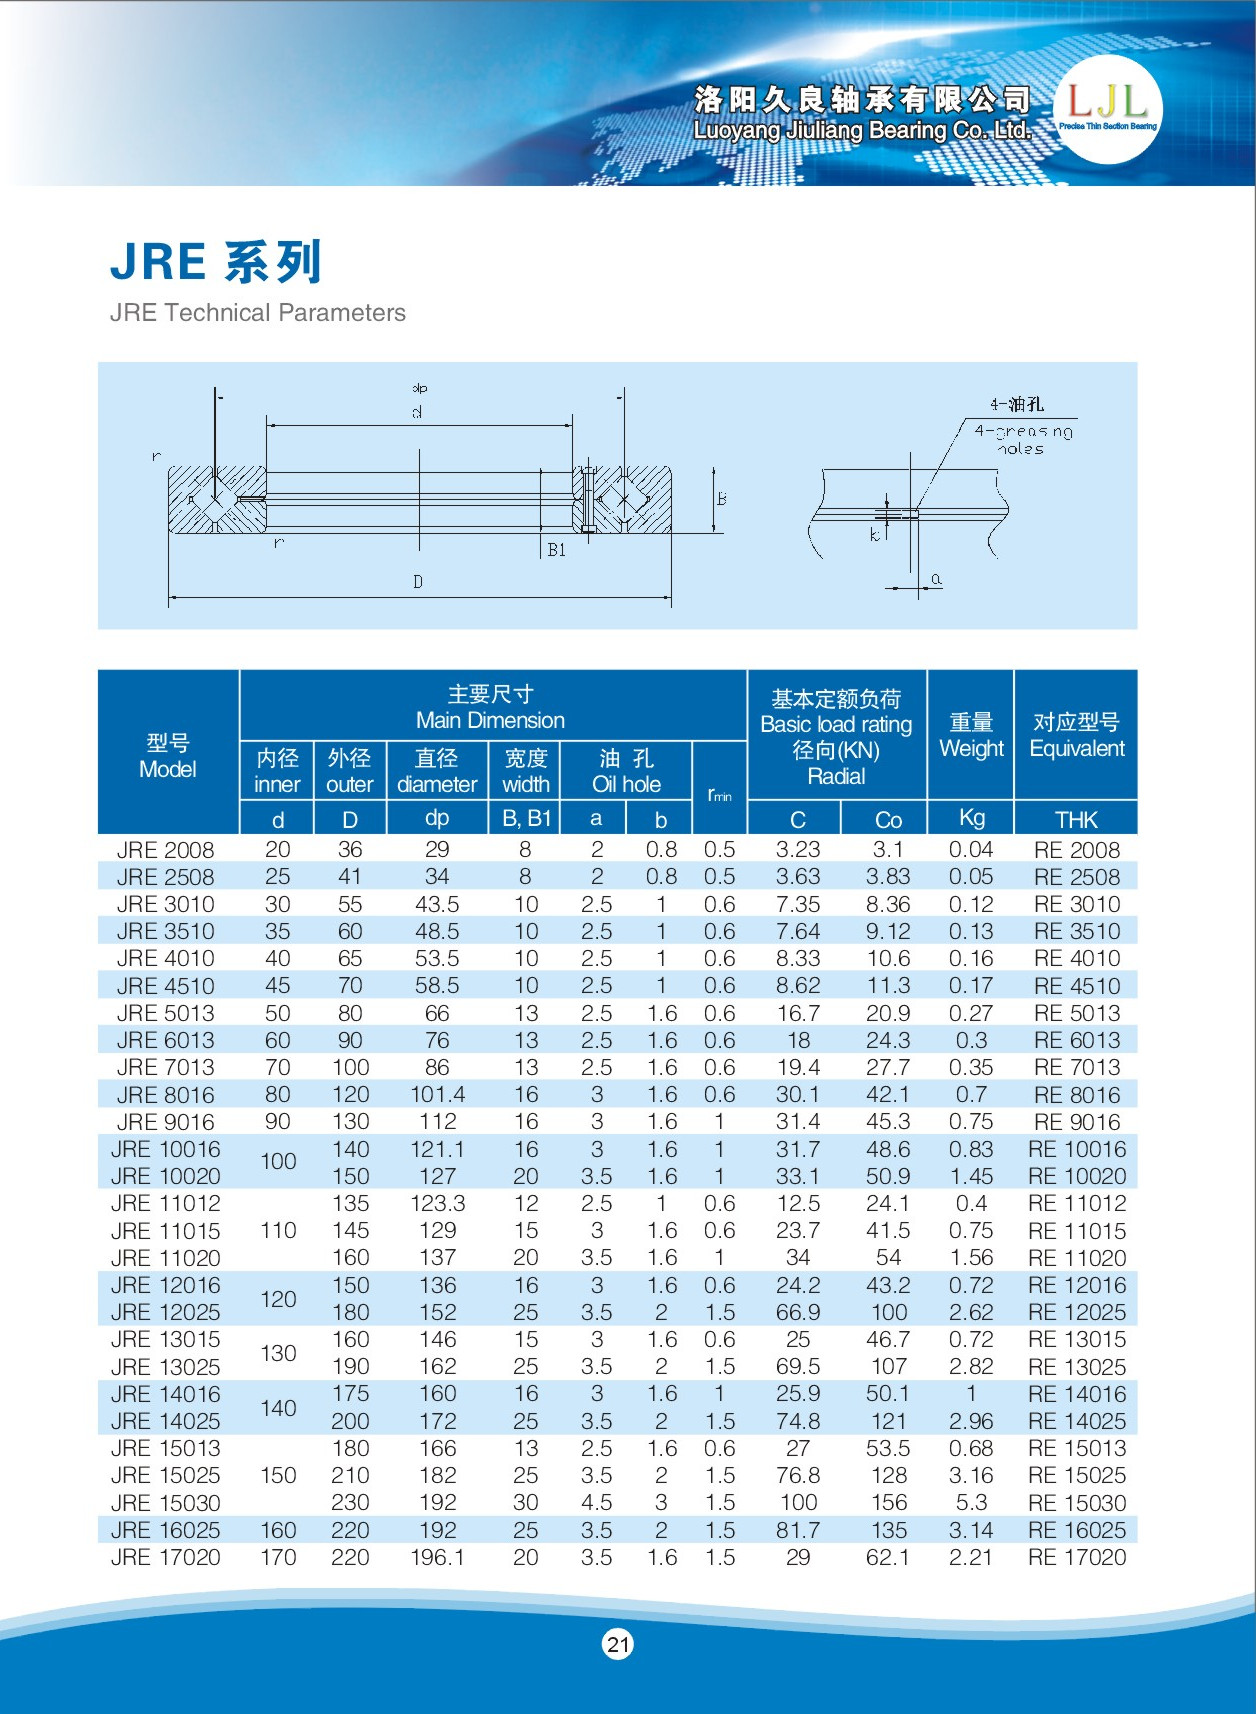 JRE2008 | JRE2508 | JRE3010 | JRE3510 | JRE4010 | JRE4510 | JRE5013 | JRE6013 | JRE7013 | JRE8016 | JRE9016 | JRE10016 | JRE10020 | JRE11012 | JRE11015 | JRE11020 | JRE12016 | JRE12025 | JRE13015 | JRE13025 | JRE14016 | JRE14025 | JRE15013 | JRE15025 | JRE15030 | JRE16025 | JRE17020 | 
RE2008 | RE2508 | RE3010 | RE3510 | RE4010 | RE4510 | RE5013 | RE6013 | RE7013 | RE8016 | RE9016 | RE10016 | RE10020 | RE11012 | RE11015 | RE11020 | RE12016 | RE12025 | RE13015 | RE13025 | RE14016 | RE14025 | RE15013 | RE15025 | RE15030 | RE16025 | RE17020 | 